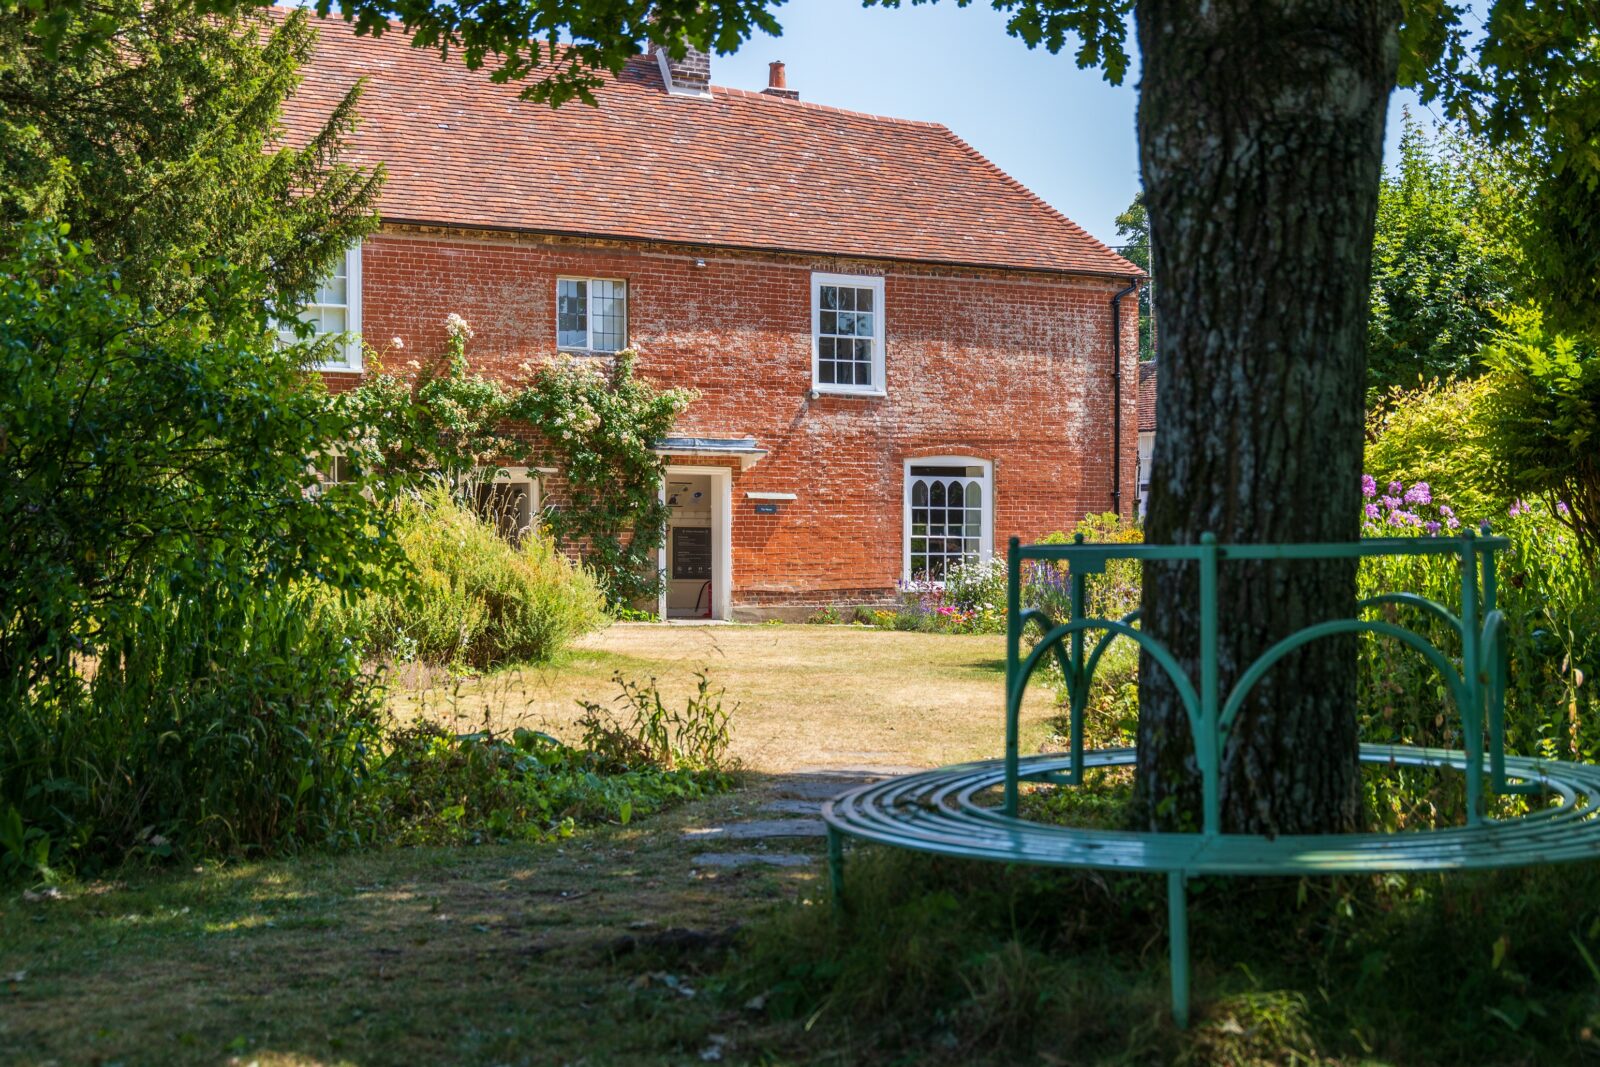 Jane Austen's House from the garden in summer